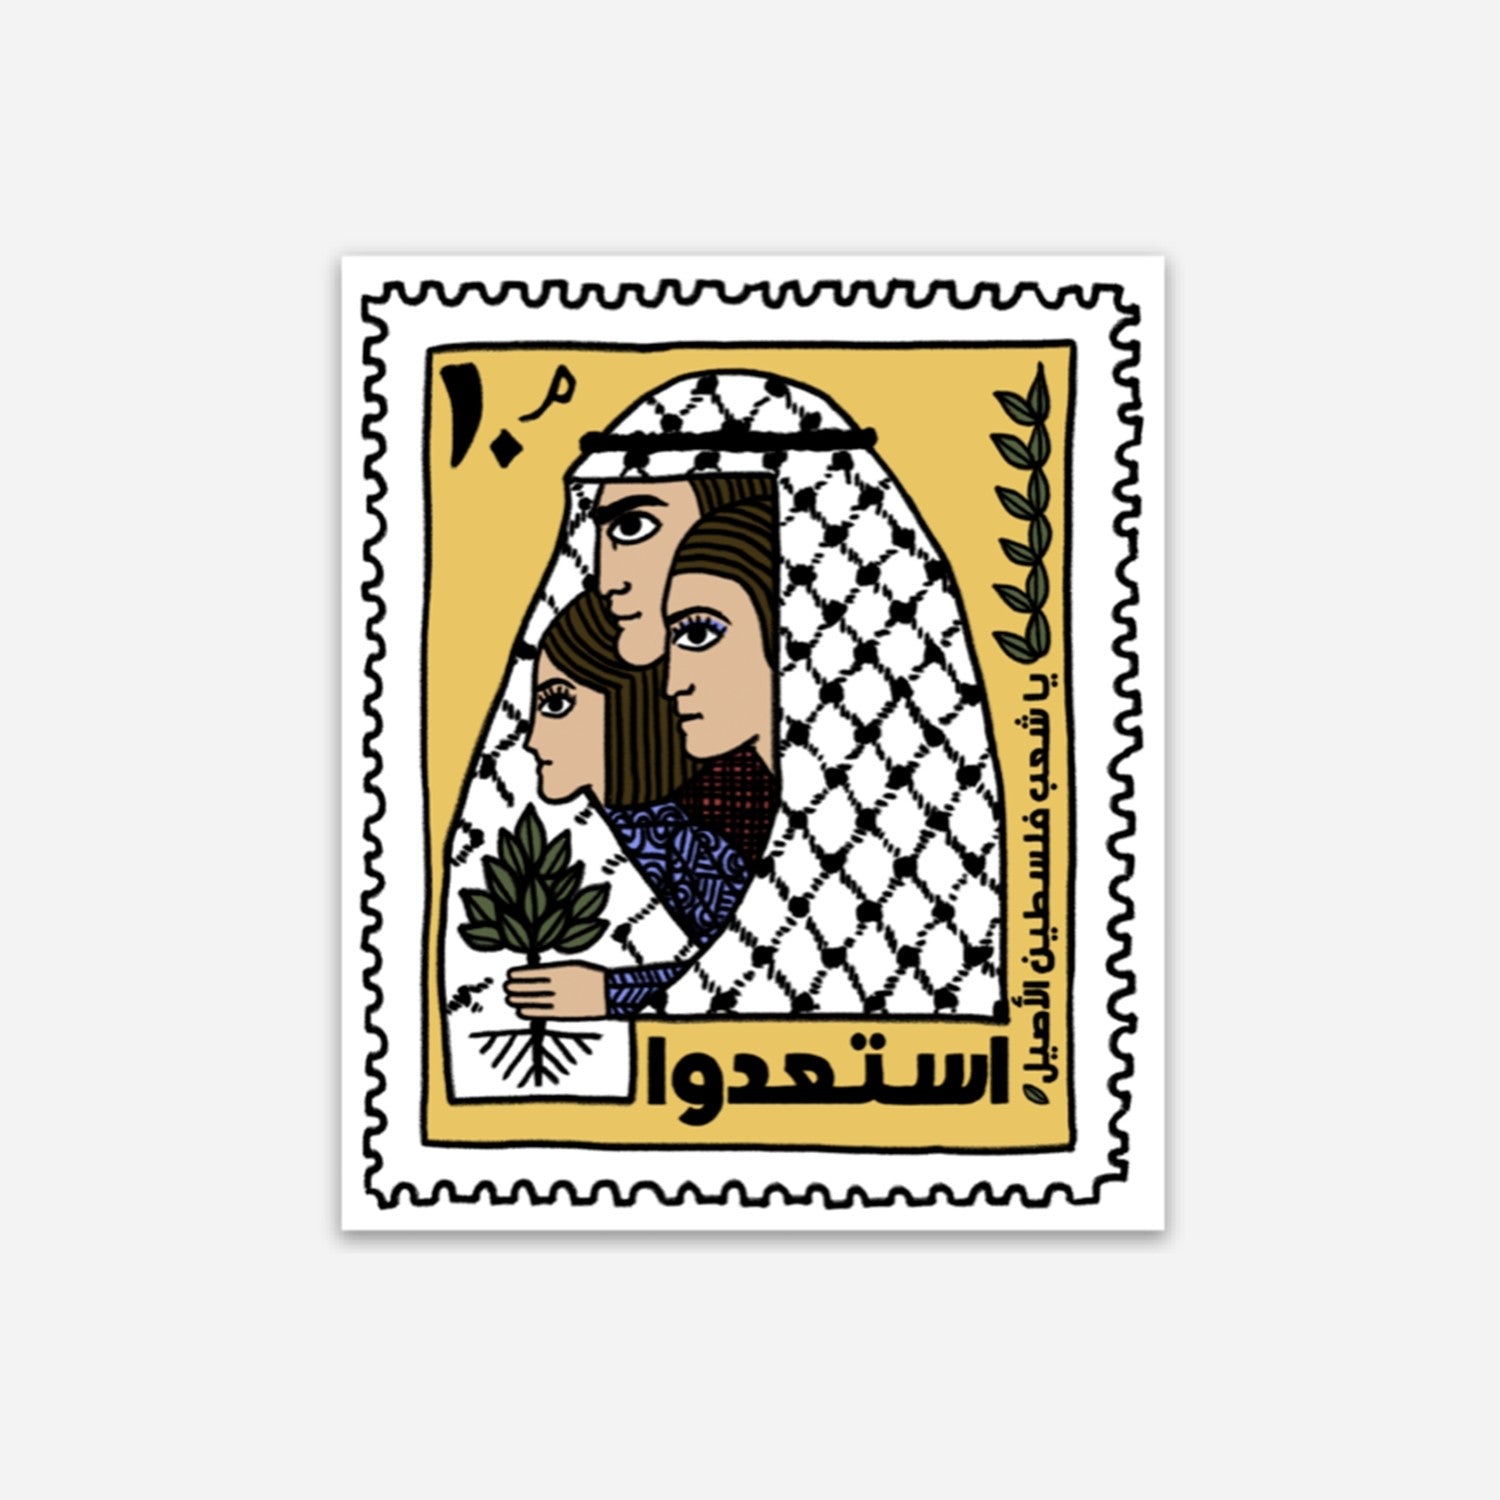 Indigenous Palestine Stamp Sticker – WATAN